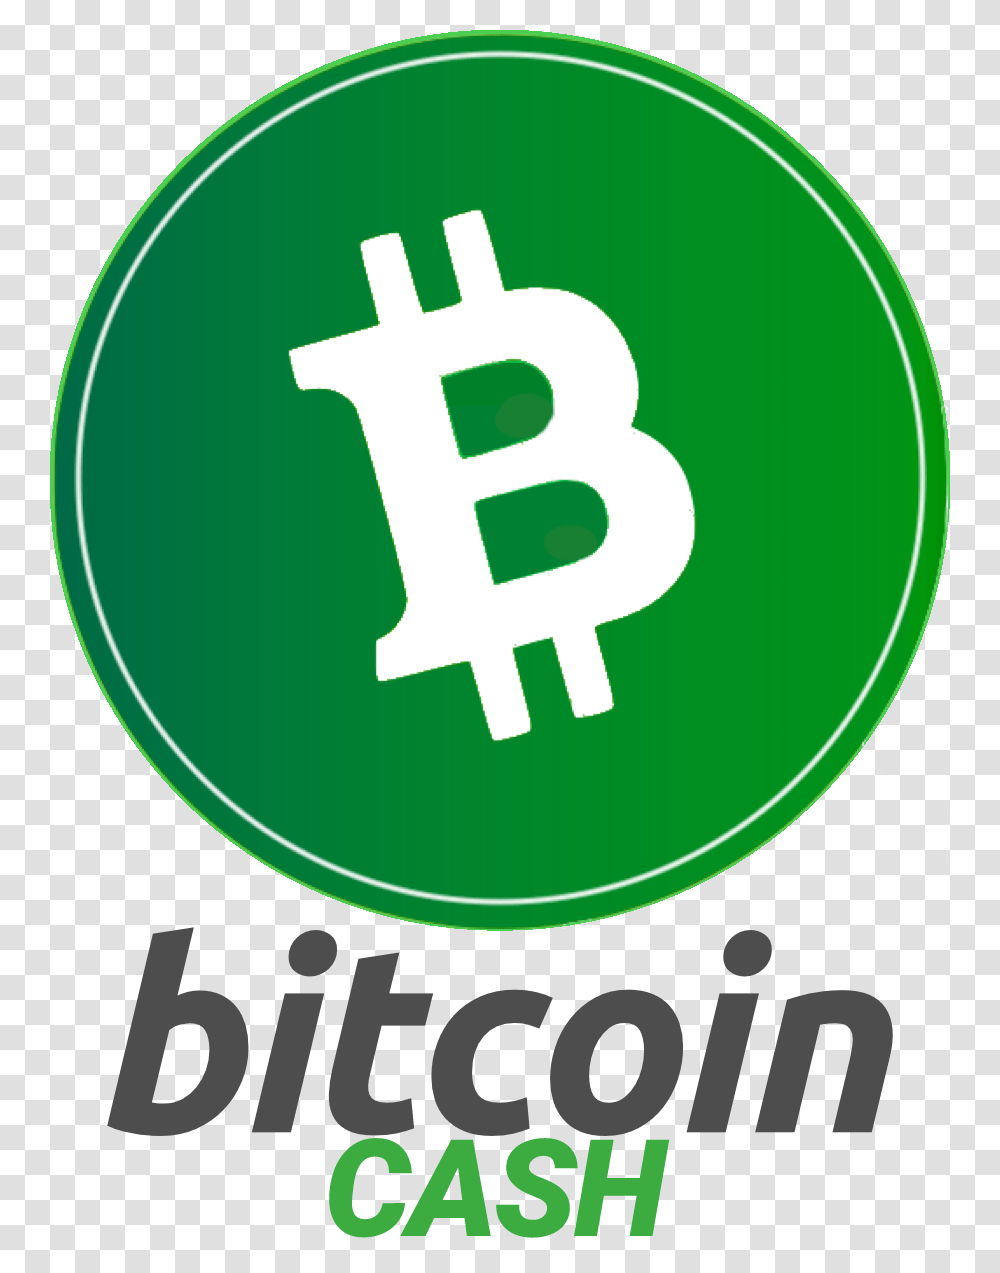 Bitcoin Cash Logo, Alphabet, Poster Transparent Png